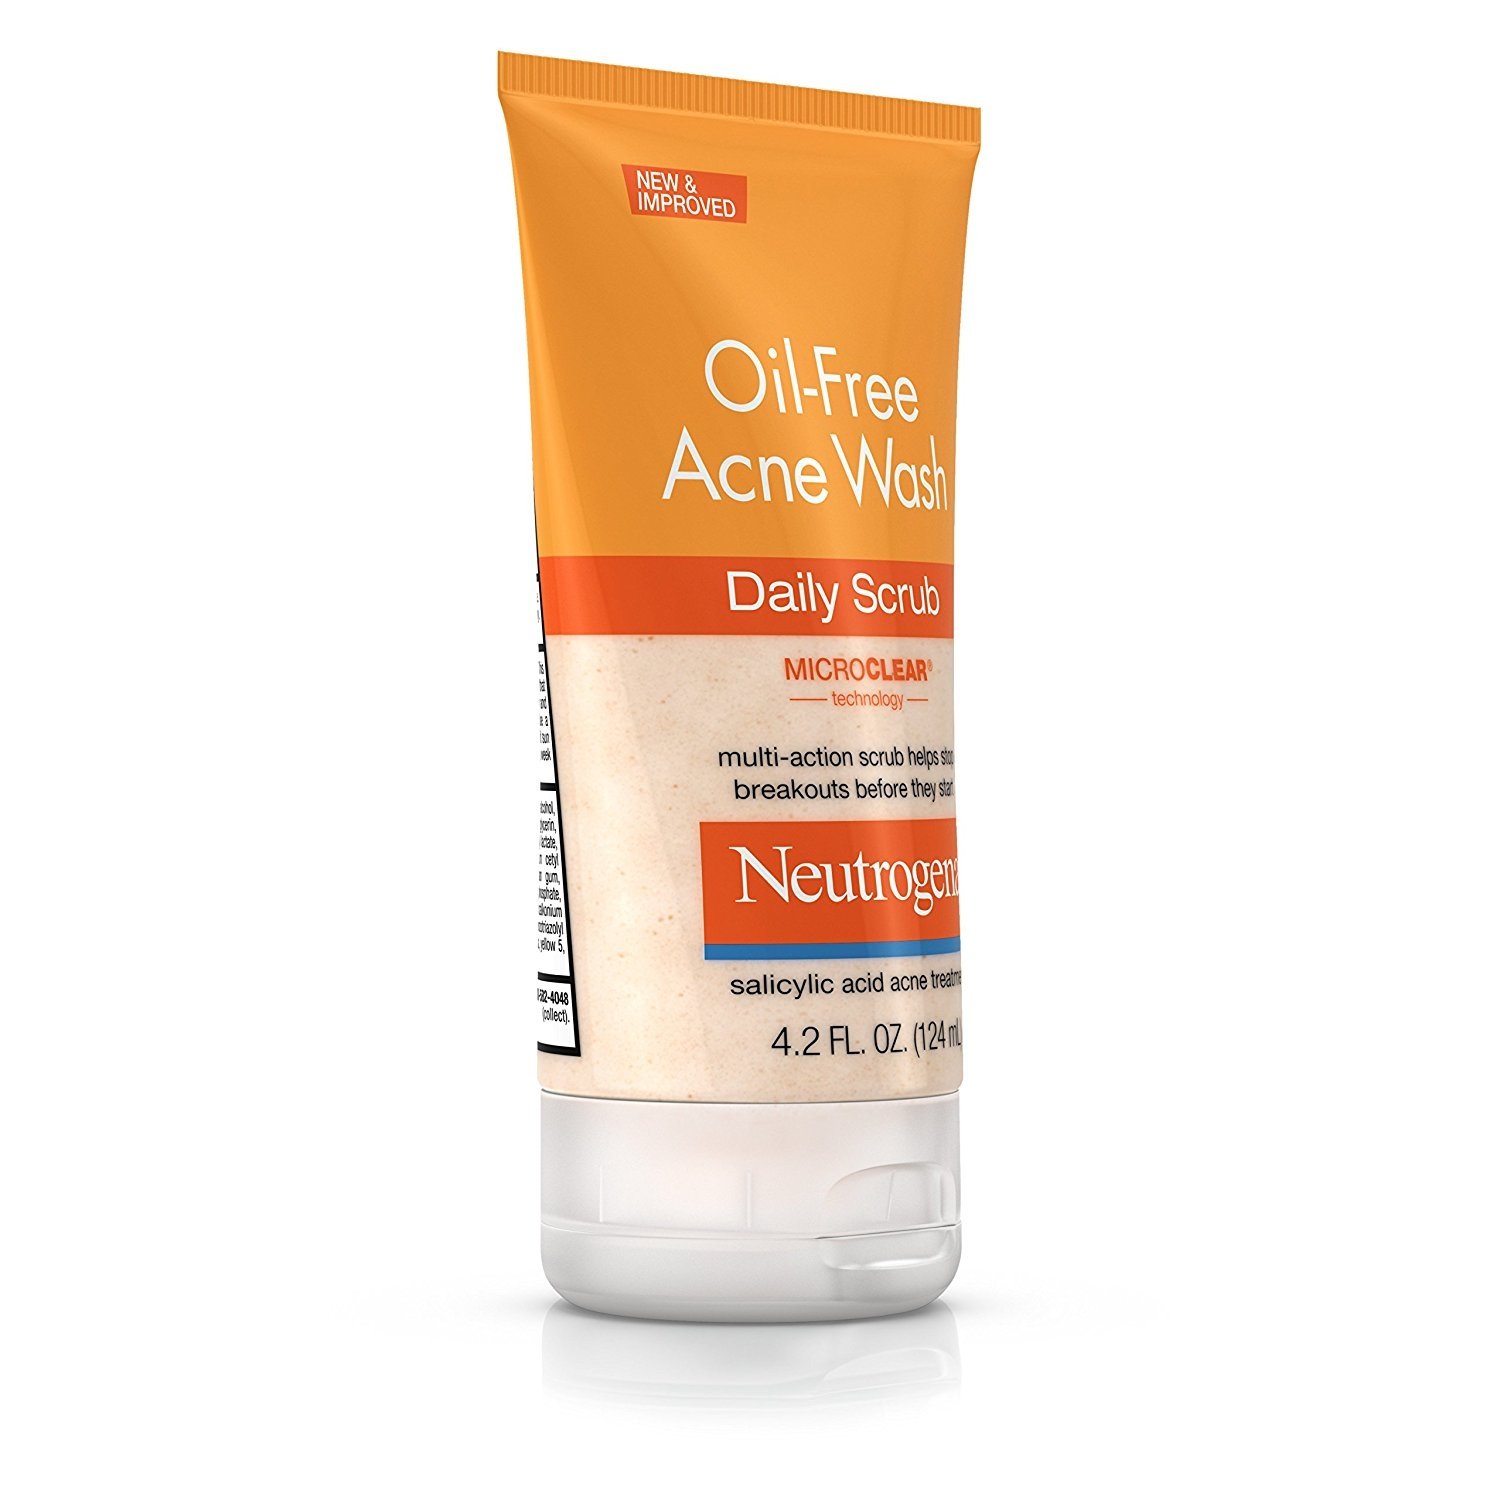 Neutrogena Oil-Free Acne Face Scrub with 2% Salicylic Acid, 4.2 fl. oz - image 3 of 8